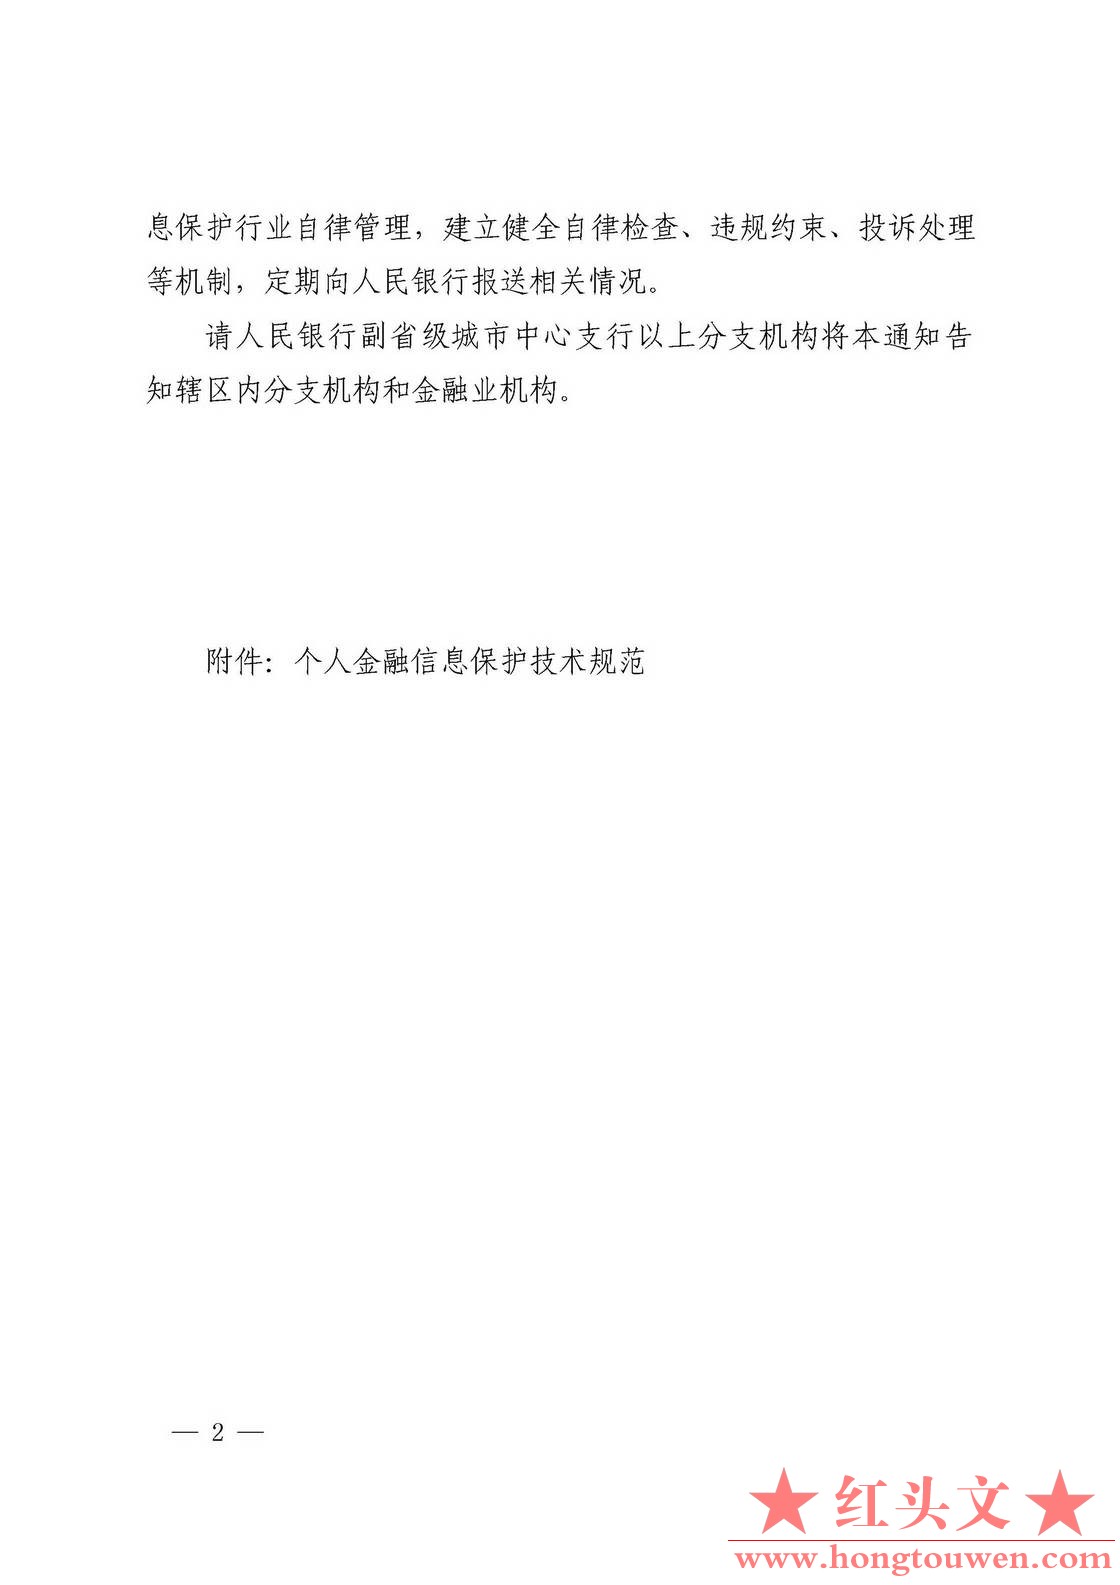 银发[2020]45号-中国人民银行关于发布金融行业标准做好个人金融信息保护技术管理工作.jpg